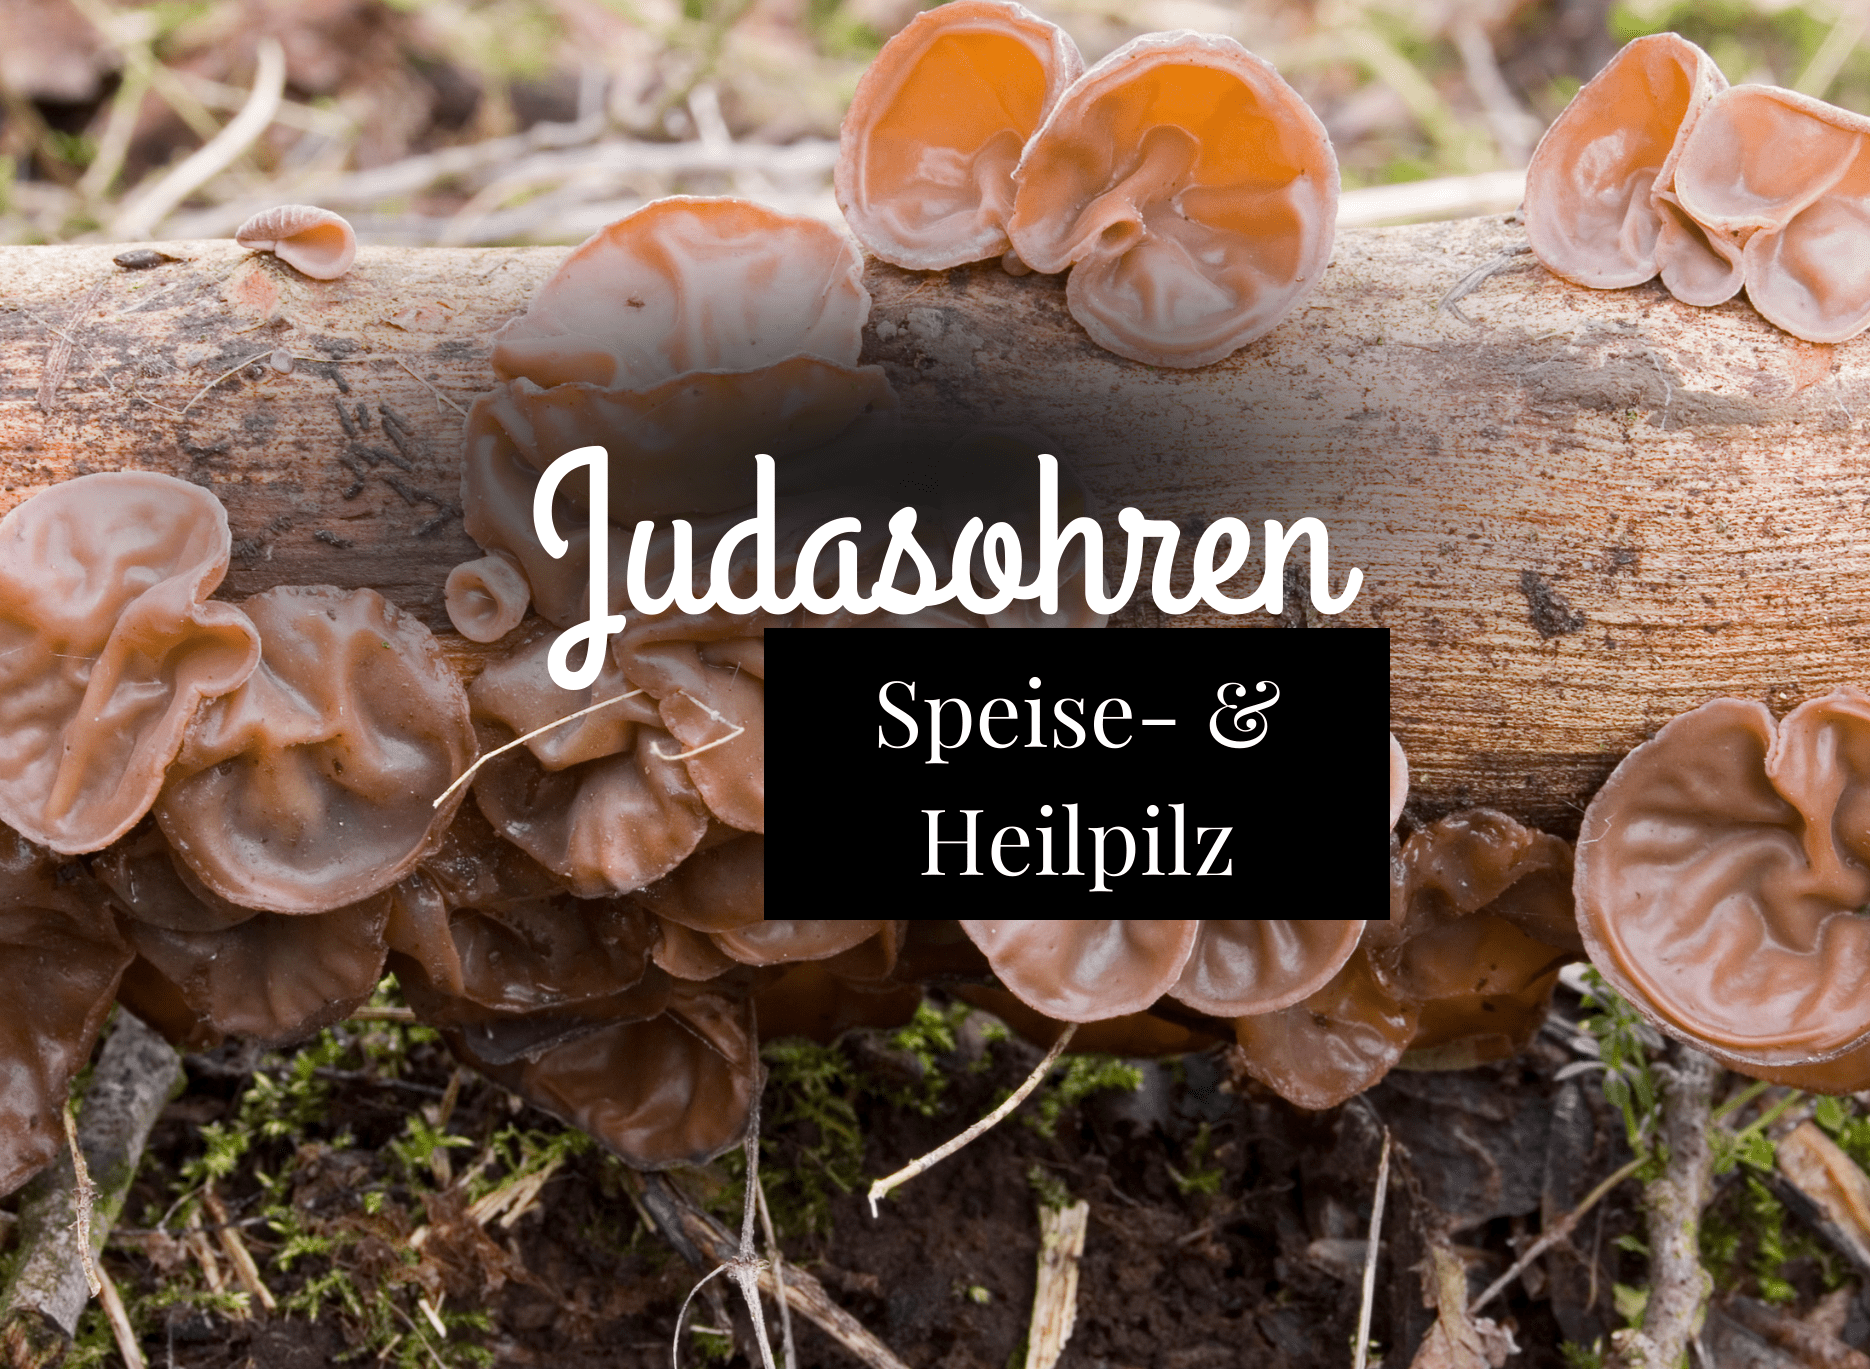 You are currently viewing Judasohren – Speisepilz und Heilpilz